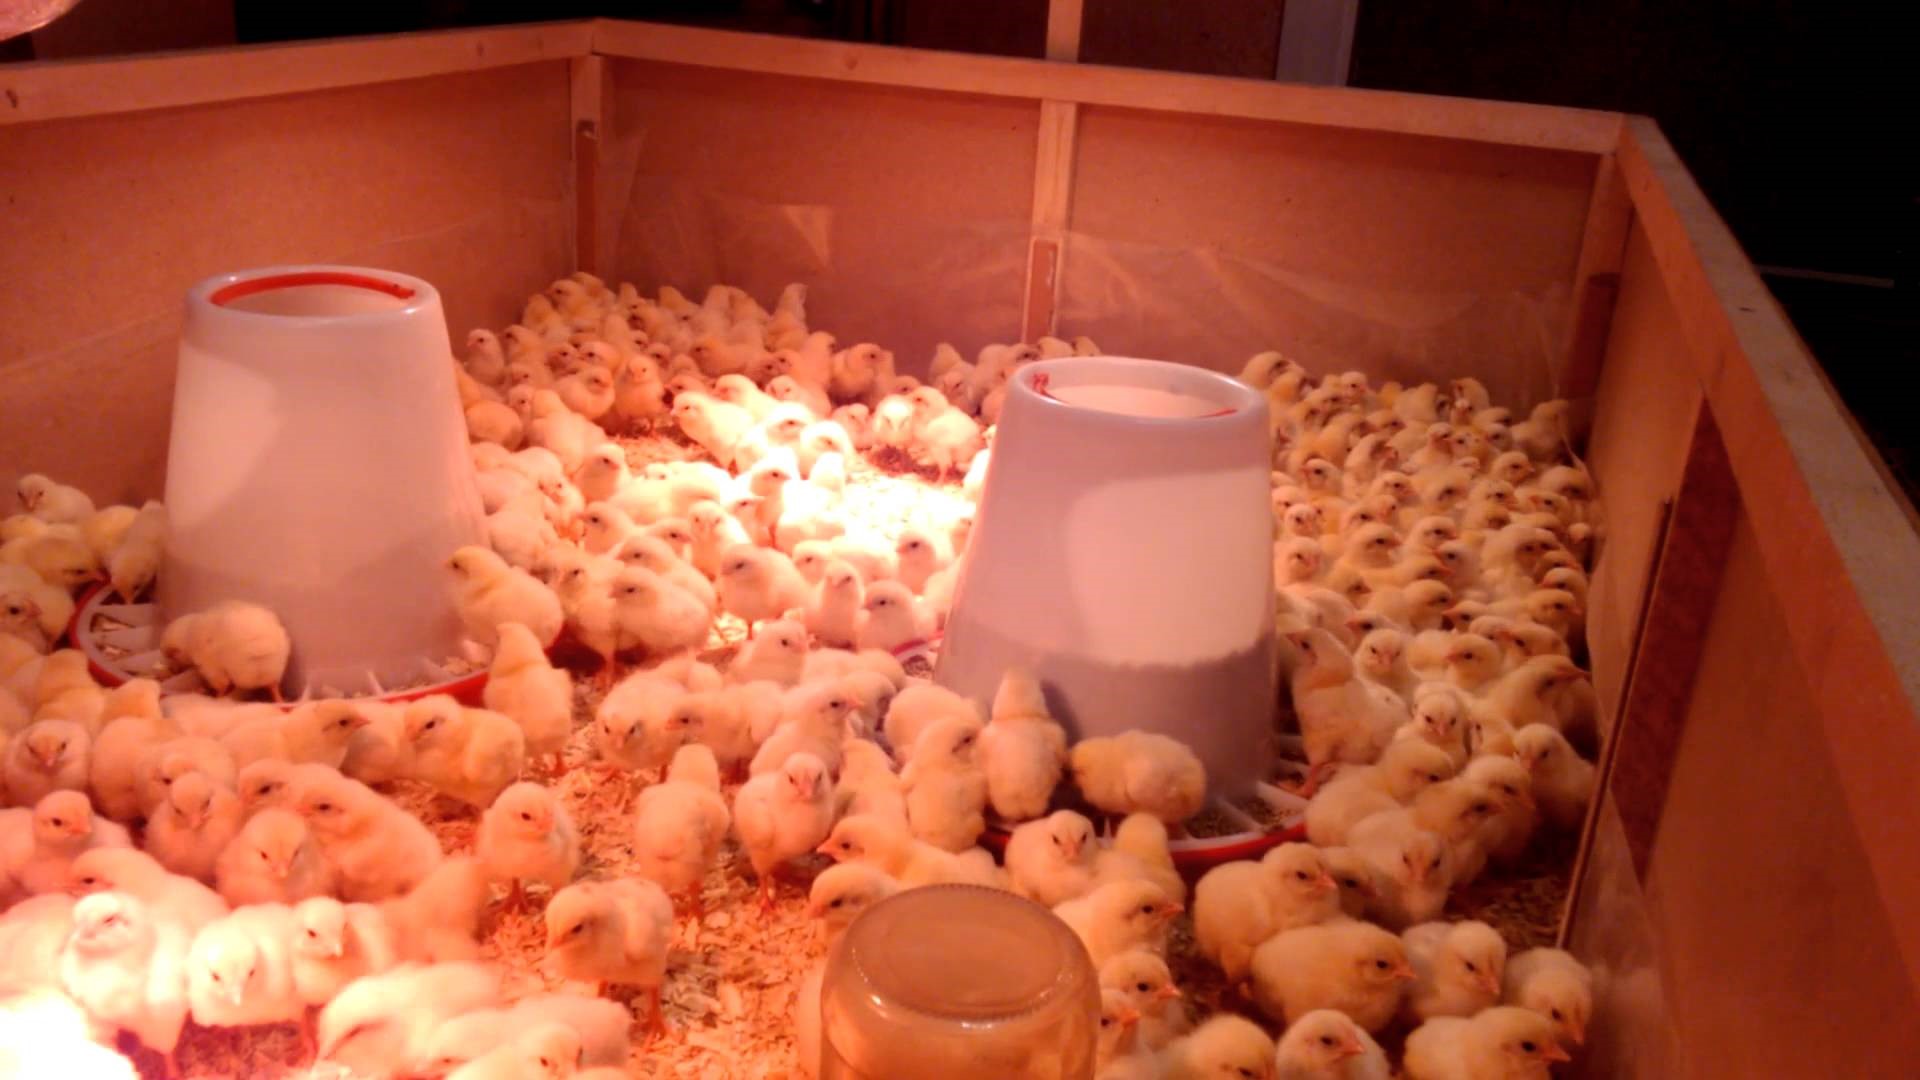 Как вырастить бройлерных цыплят в домашних условиях